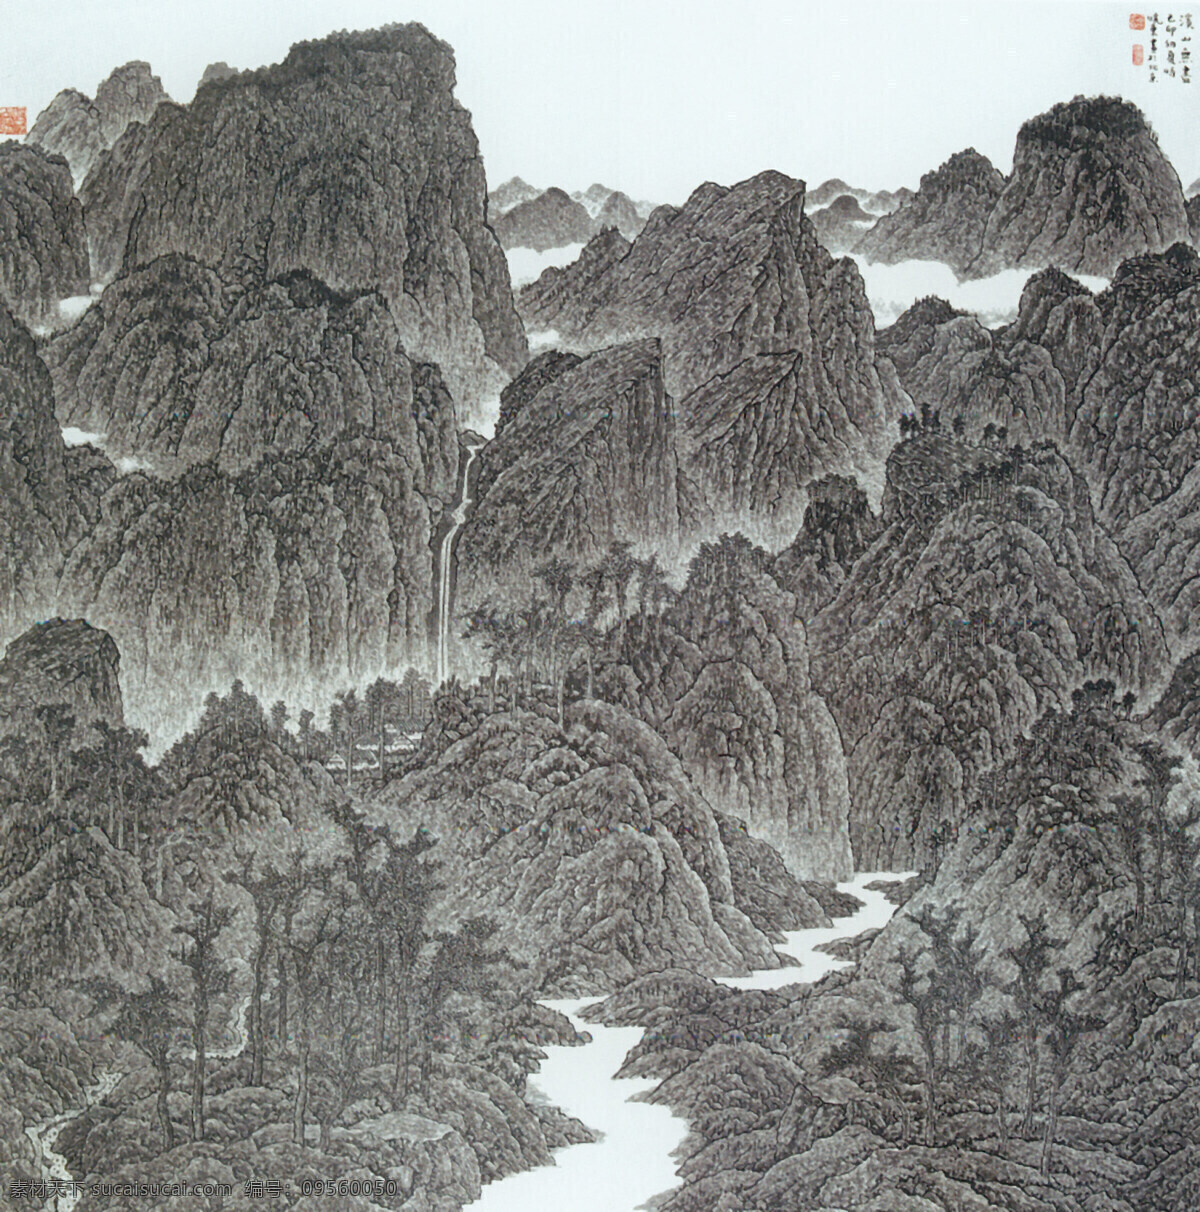 溪 山 无尽 图 传统 水墨 山水 山林 瀑布 中国 现代 篇 文化艺术 绘画书法